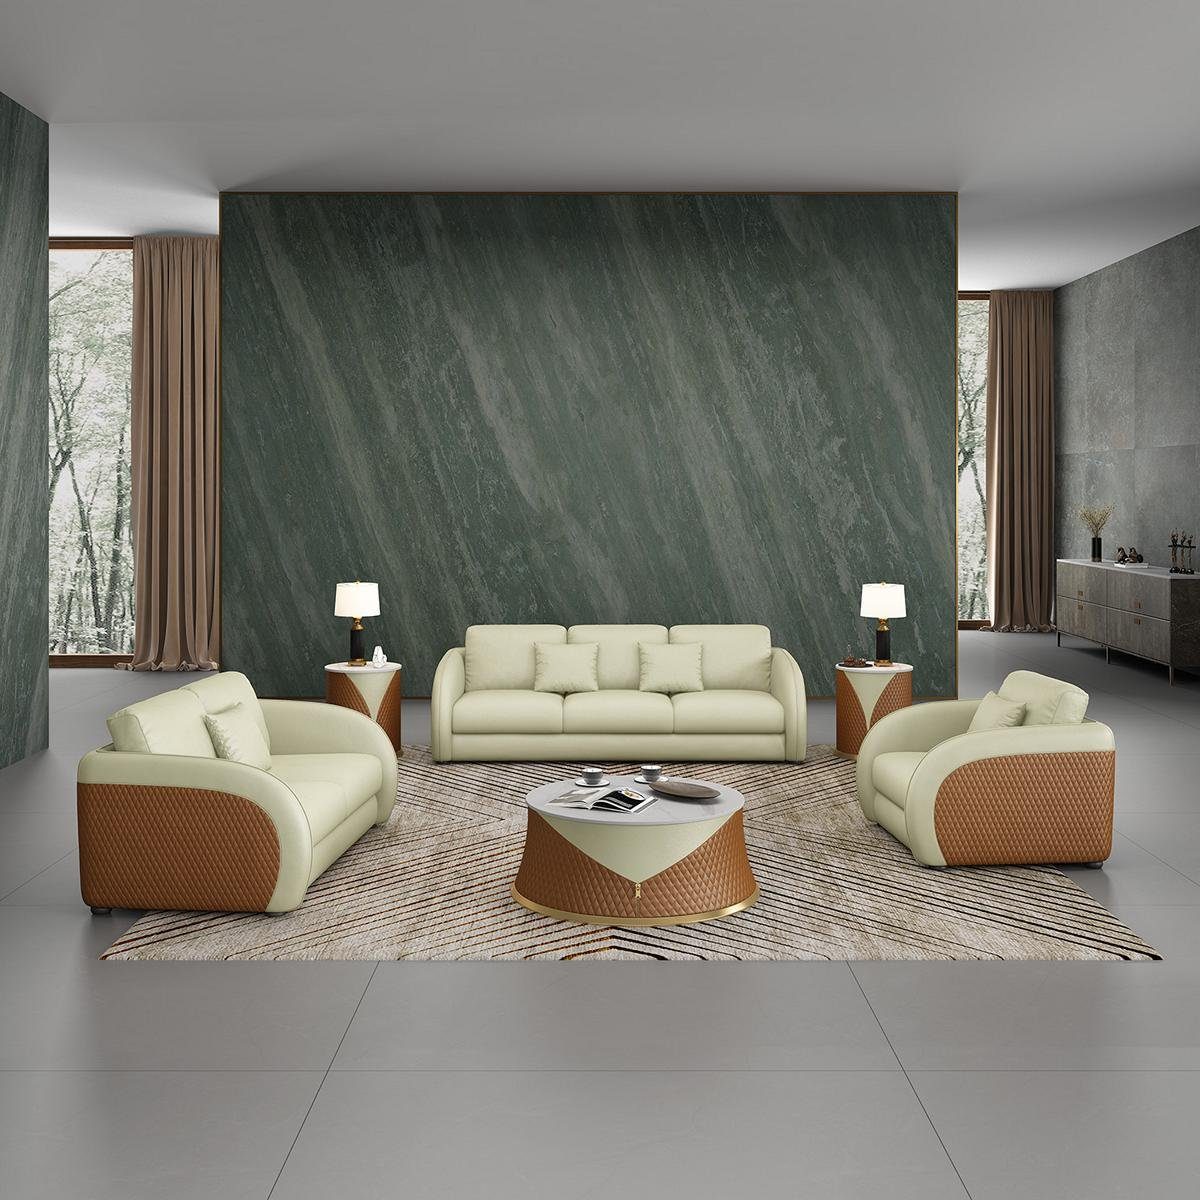 JVmoebel Wohnzimmer-Set, Sofa Sofagarnitur 3 1 Sitzer Set Design Polster Couchen Couch Modern Grün/Braun